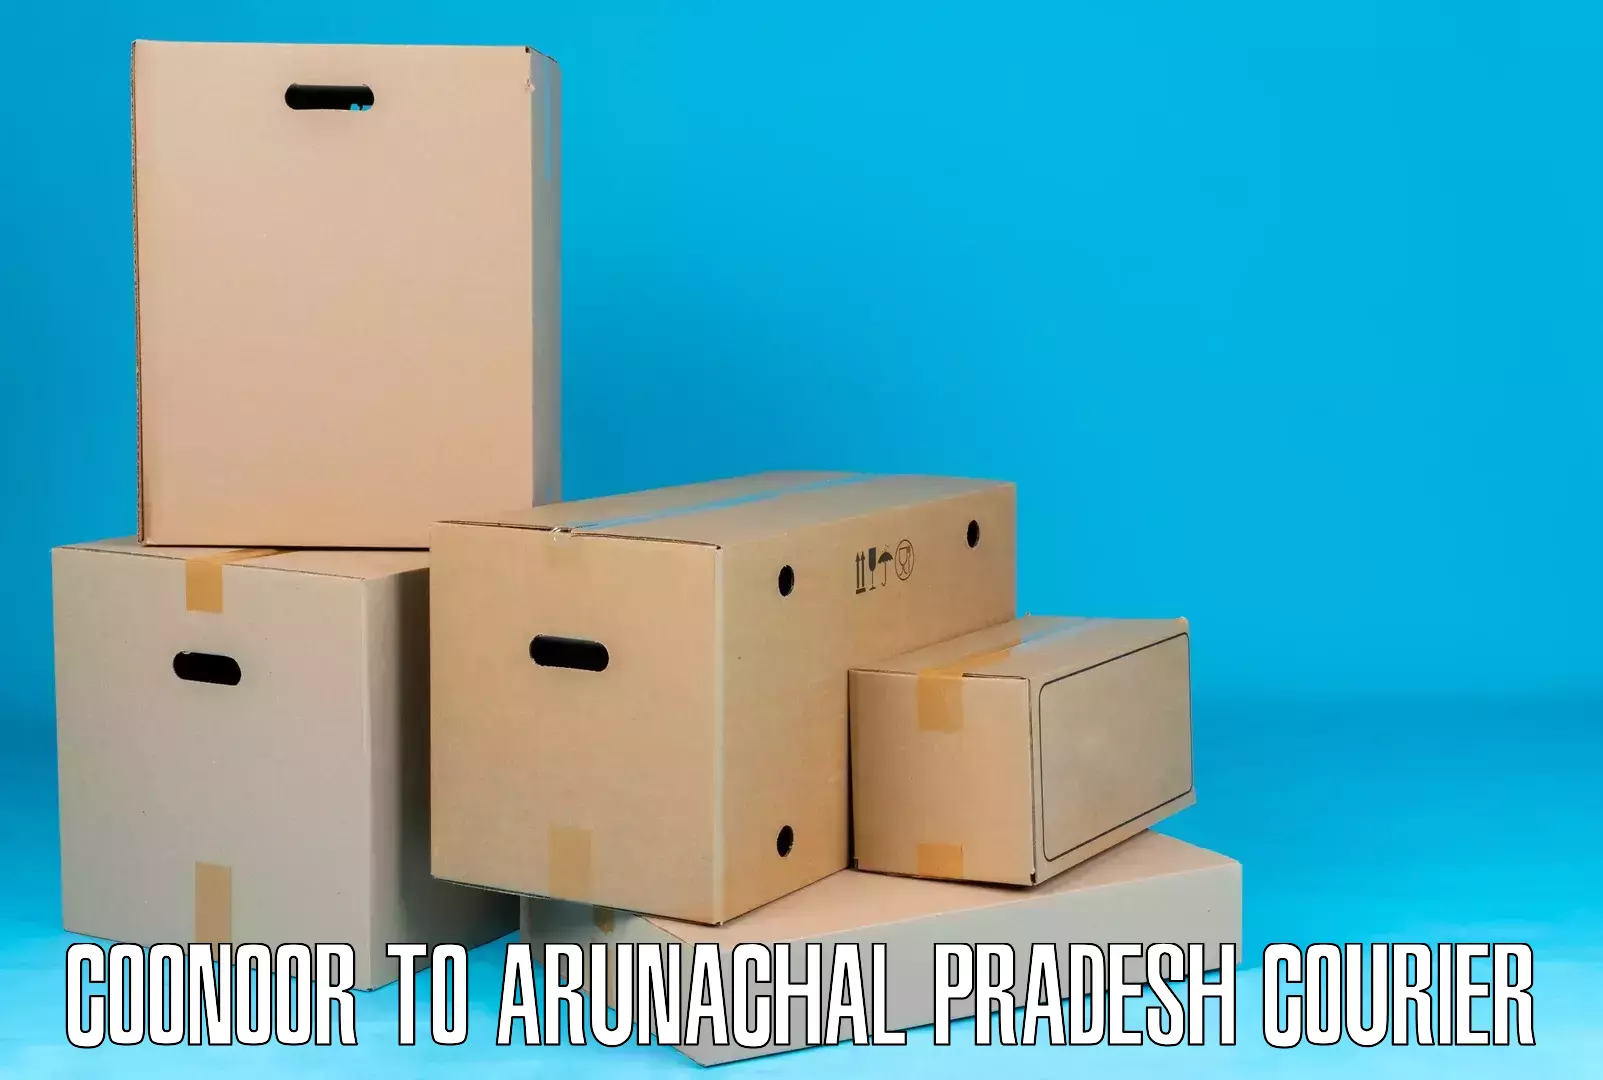 Local delivery service Coonoor to Arunachal Pradesh